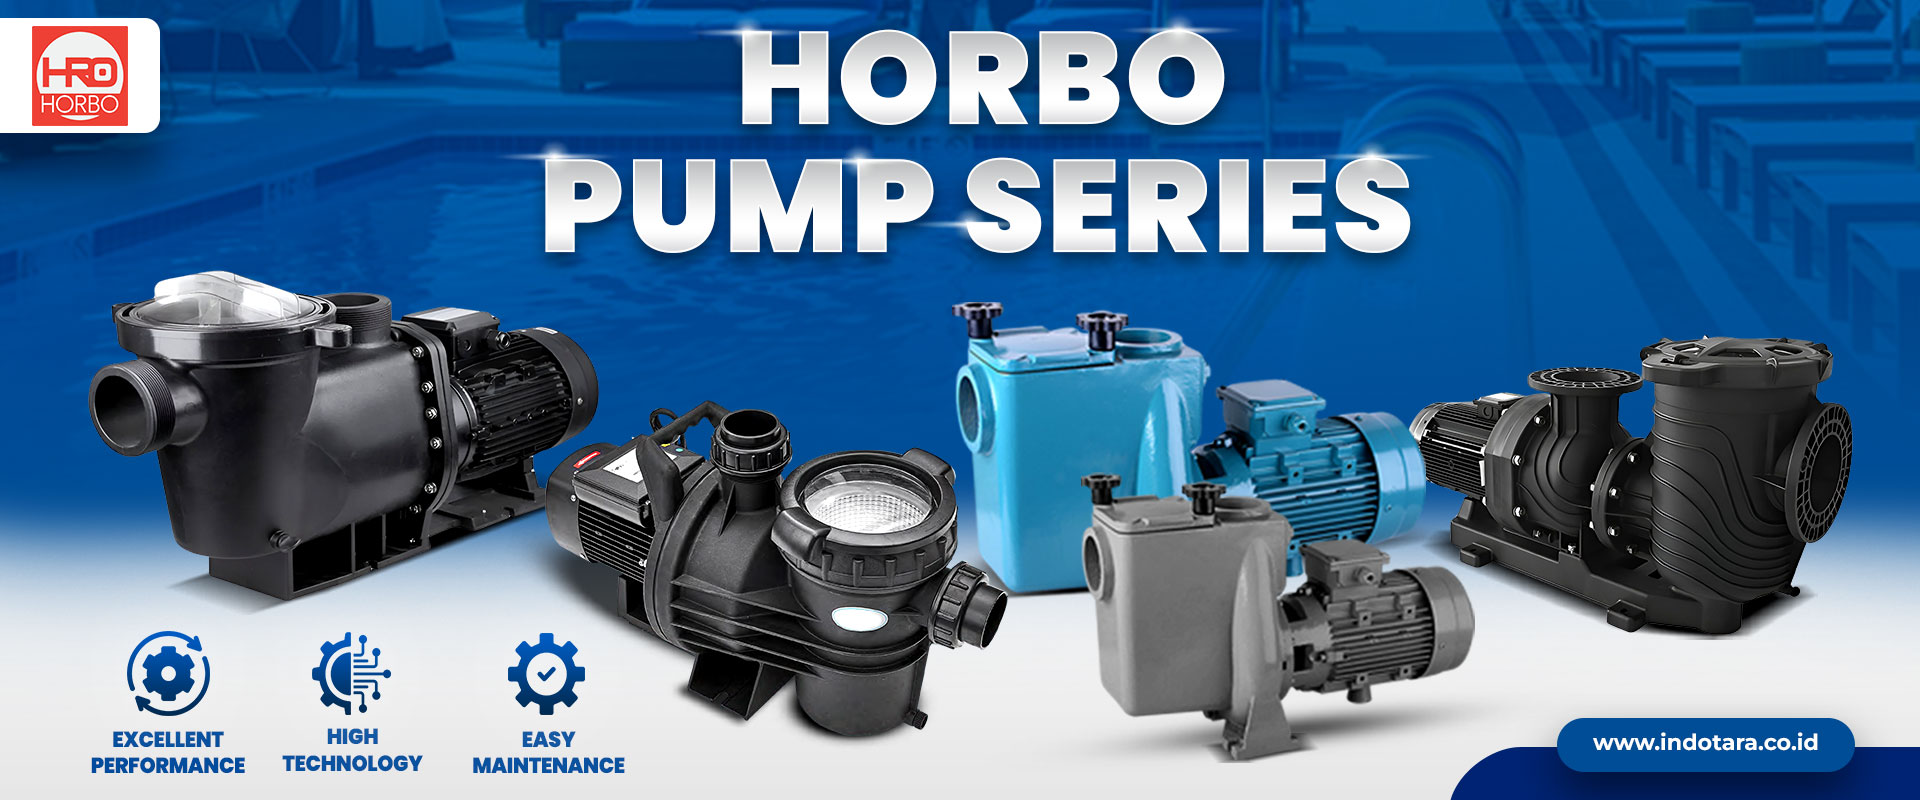 Horbo Pump Series